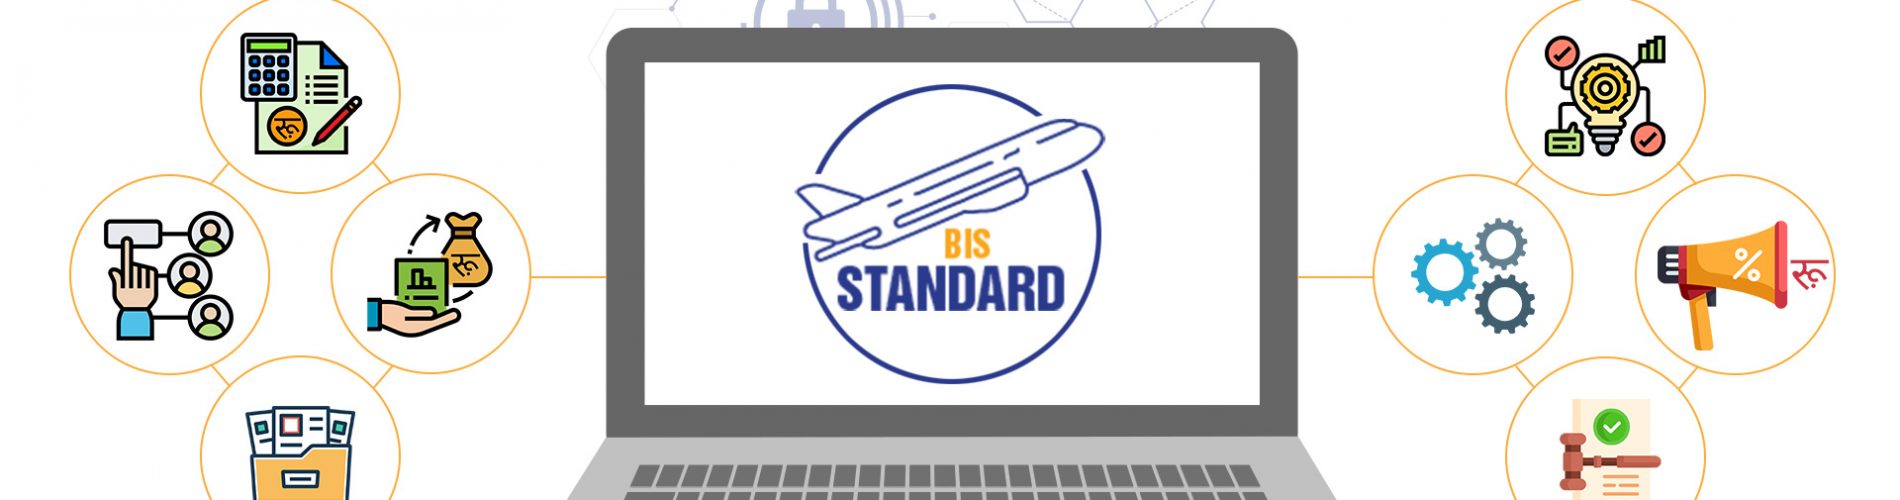 BIS-Standard